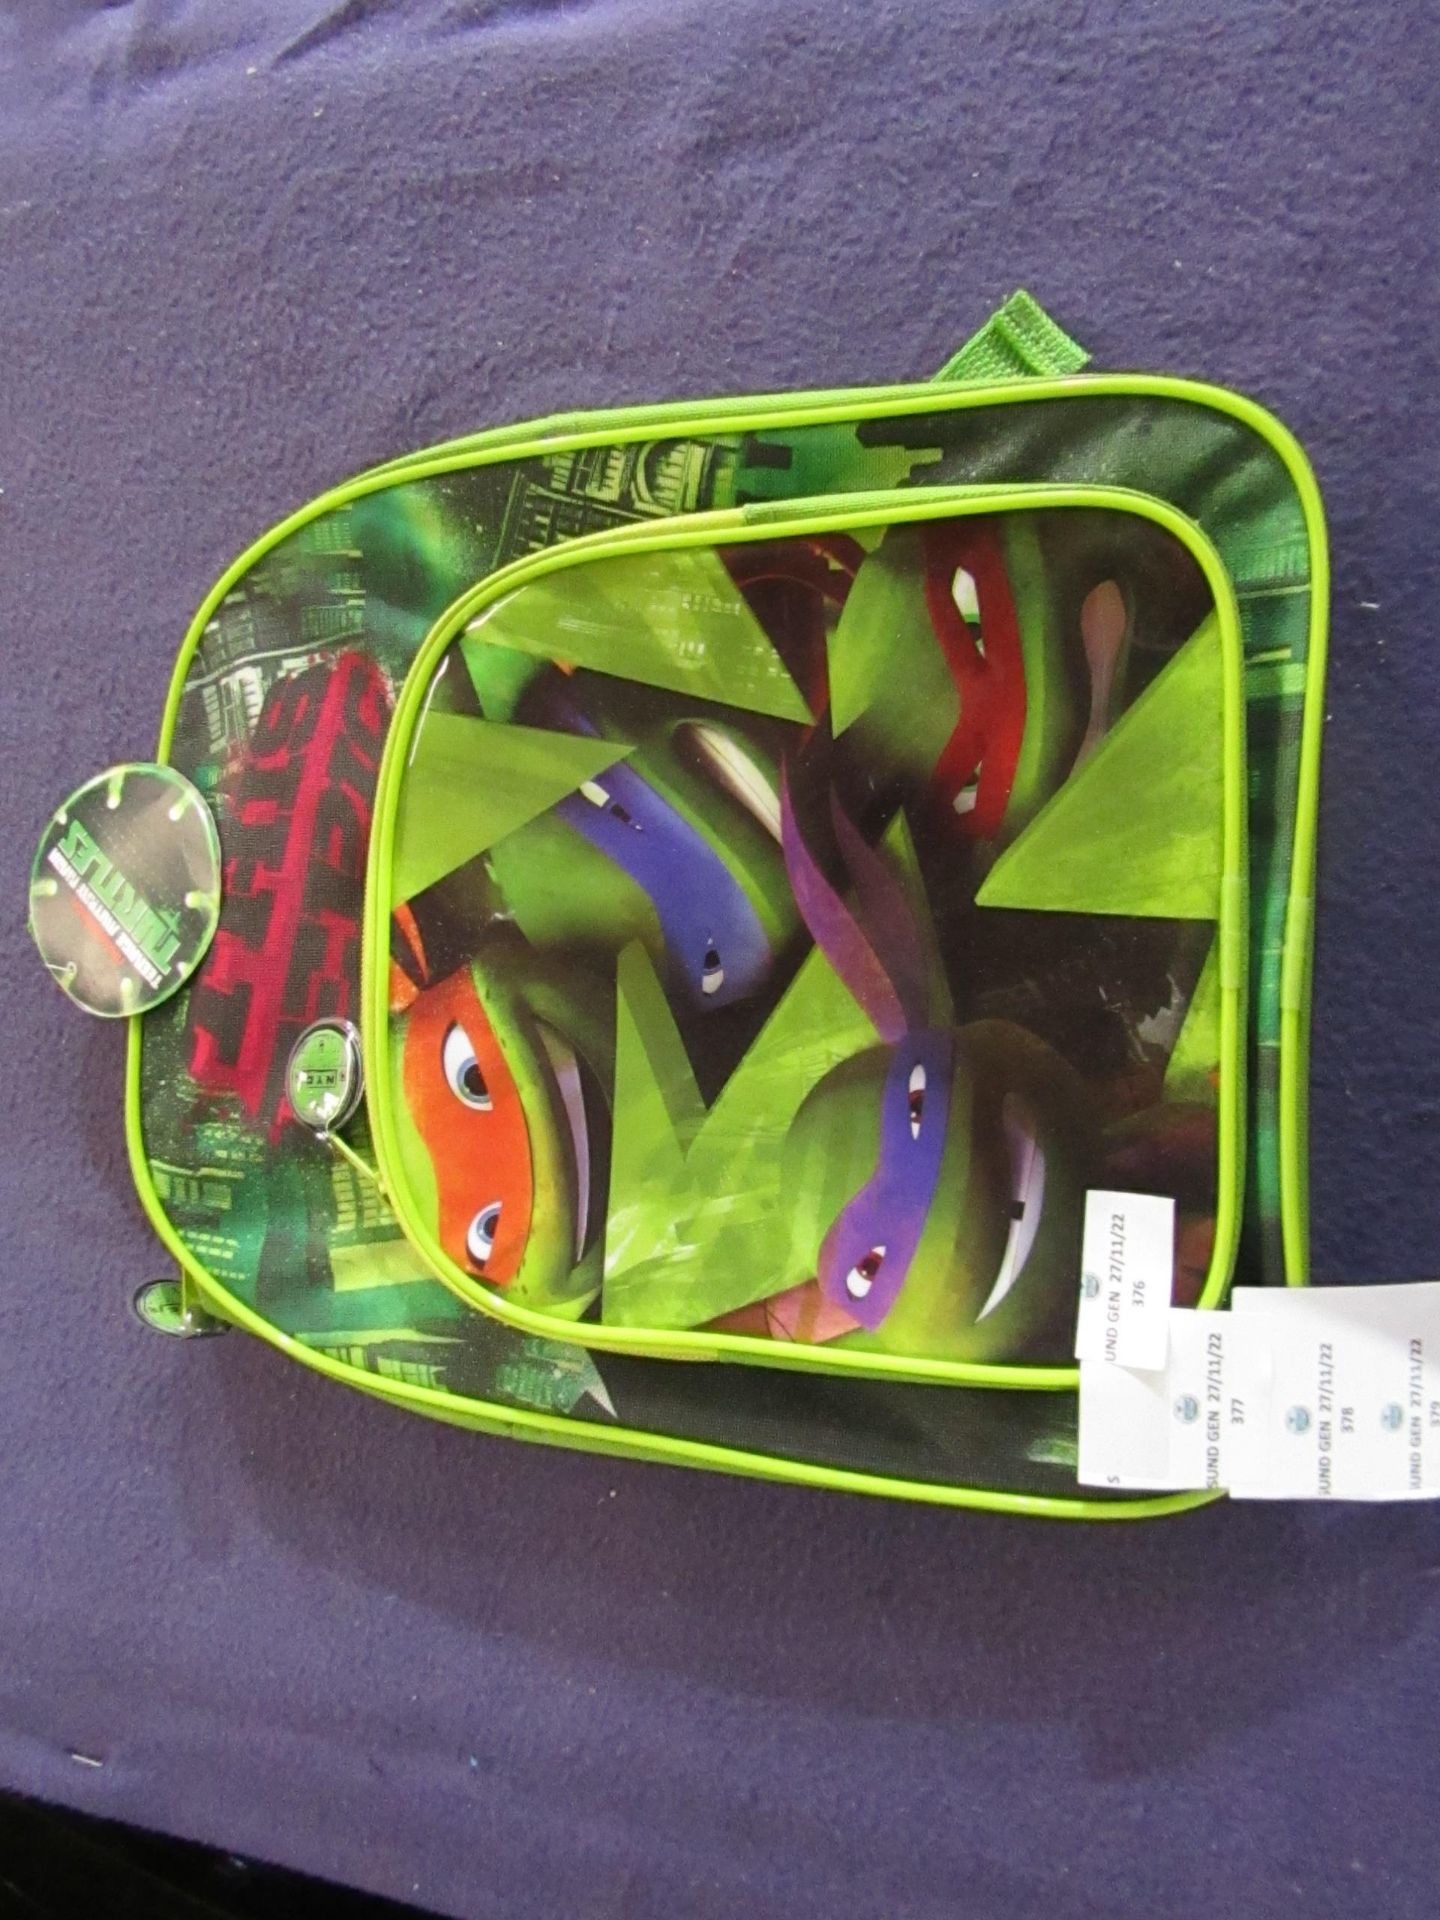 Teenage Mutant Ninja Turtles - Backpack - Unused, No Packaging.